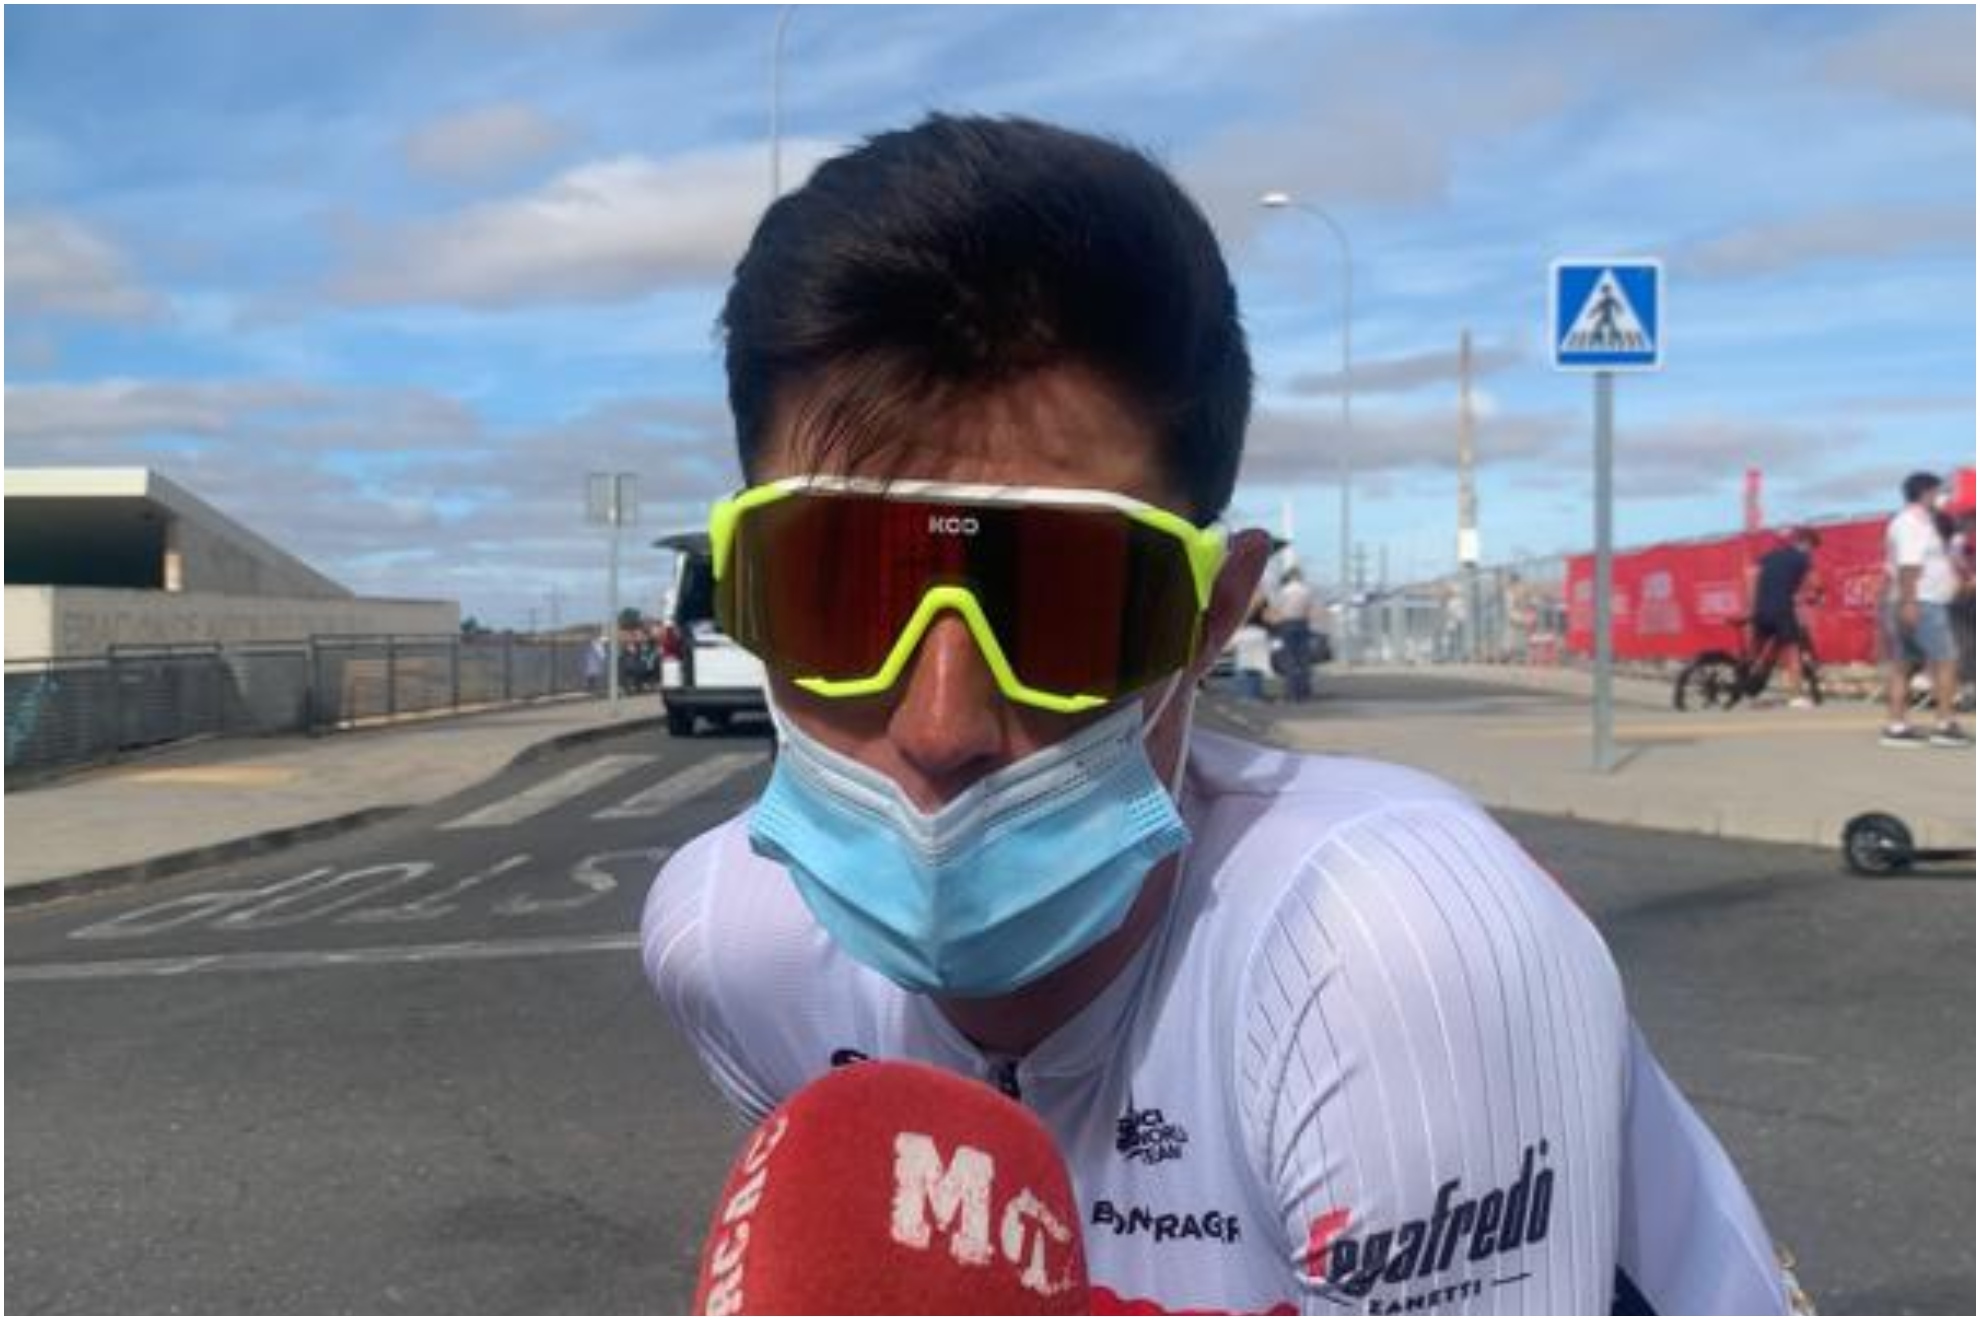 LaVuelta cruzada de 'la malgia' Juanpe: "No tengo energía ni en el control de firmas"